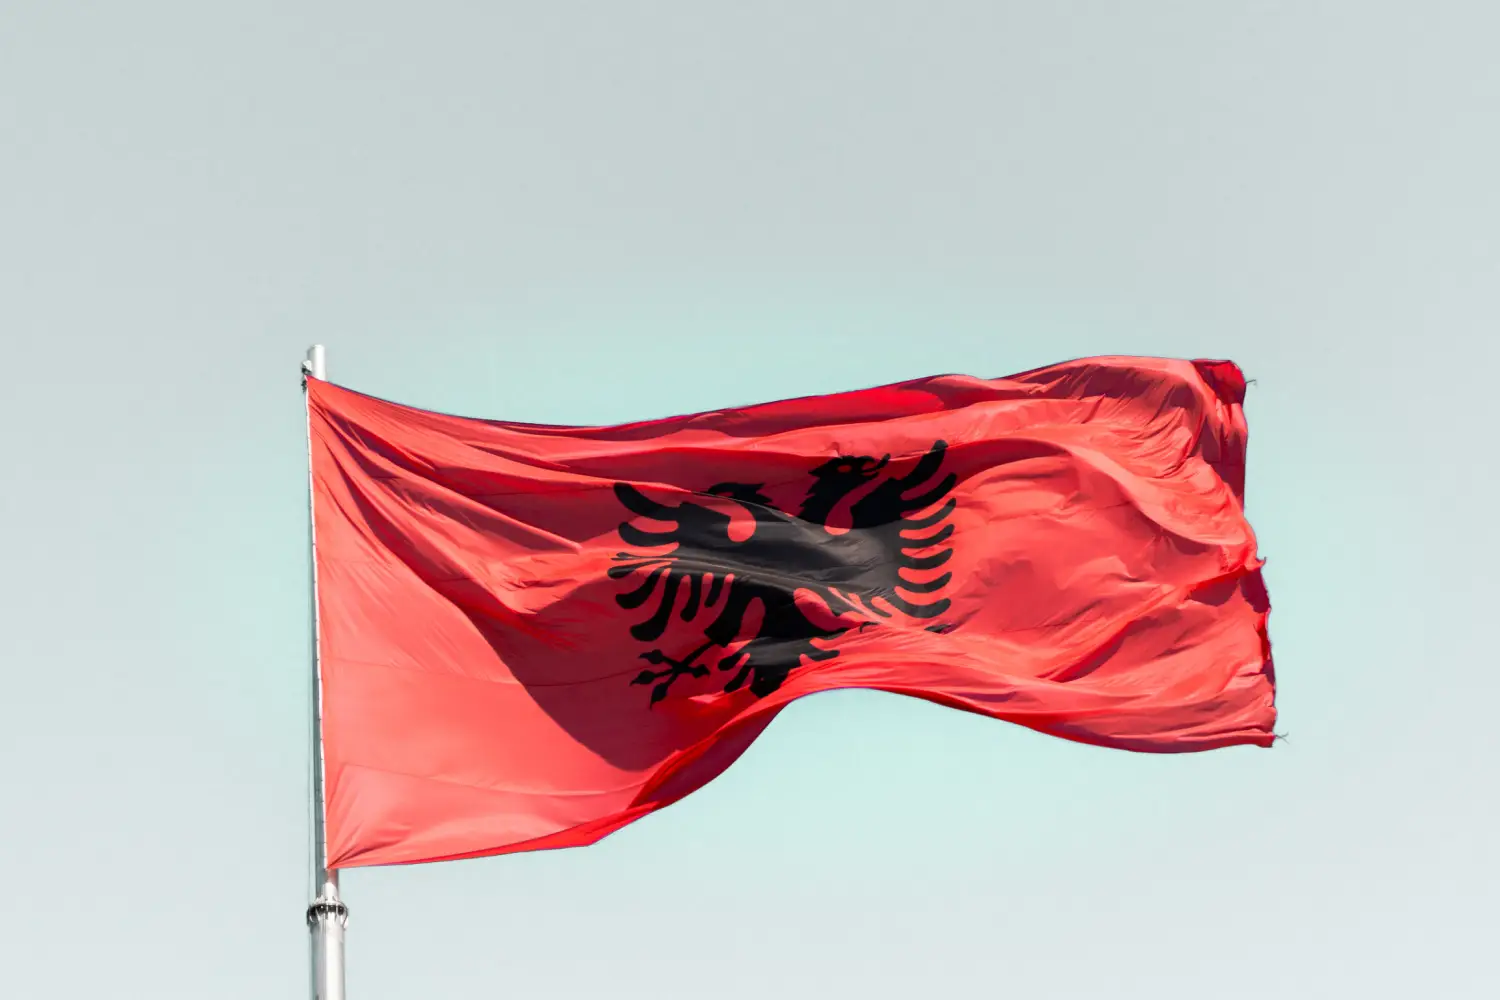 Η αλβανική σημαία με το μαύρο δικέφαλο αετό